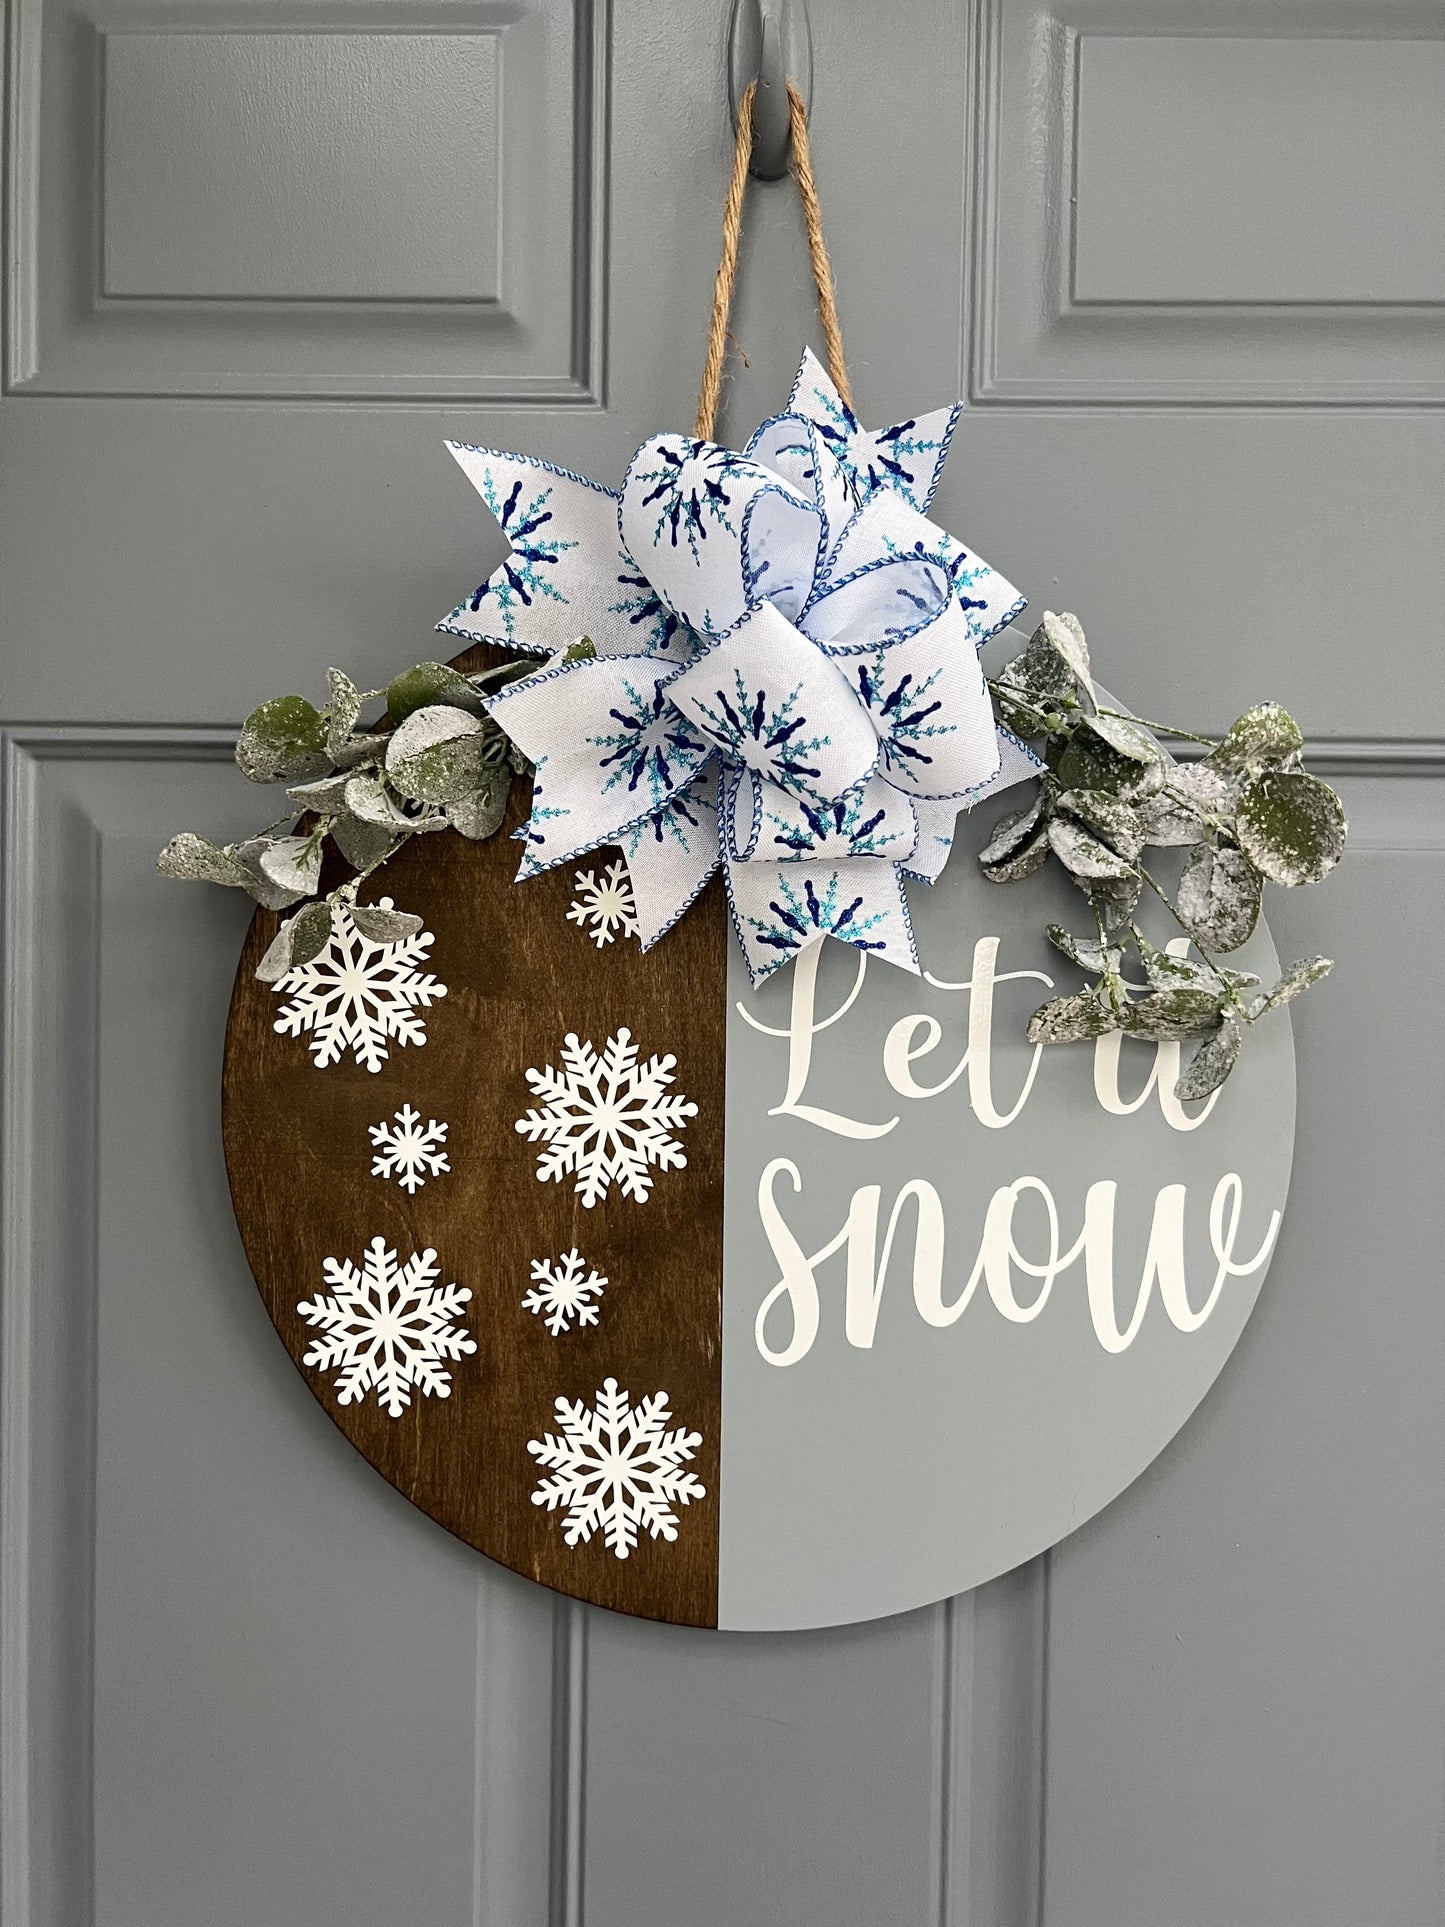 Let It Snow Door Hanger - Willow Love Bug Designs 